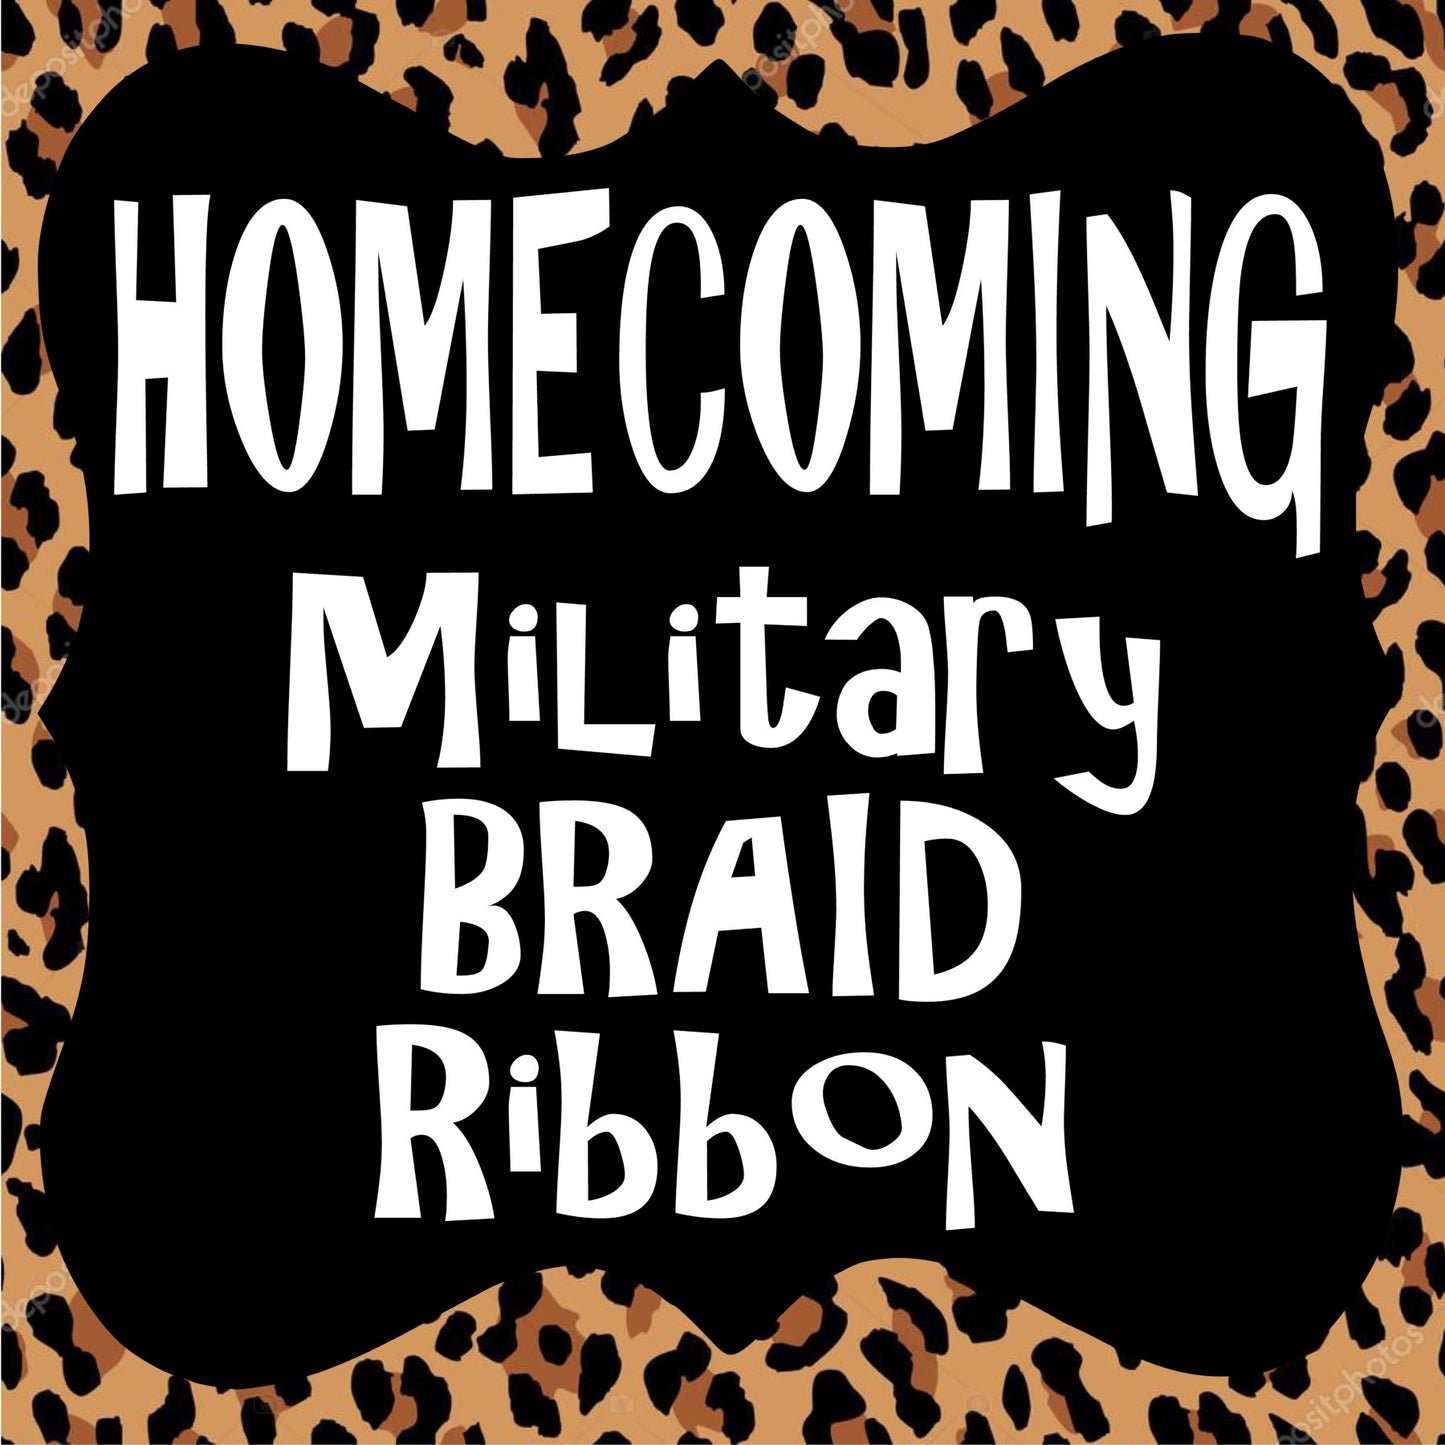 Homecoming Braid / Fancy -  Military Braid 36"